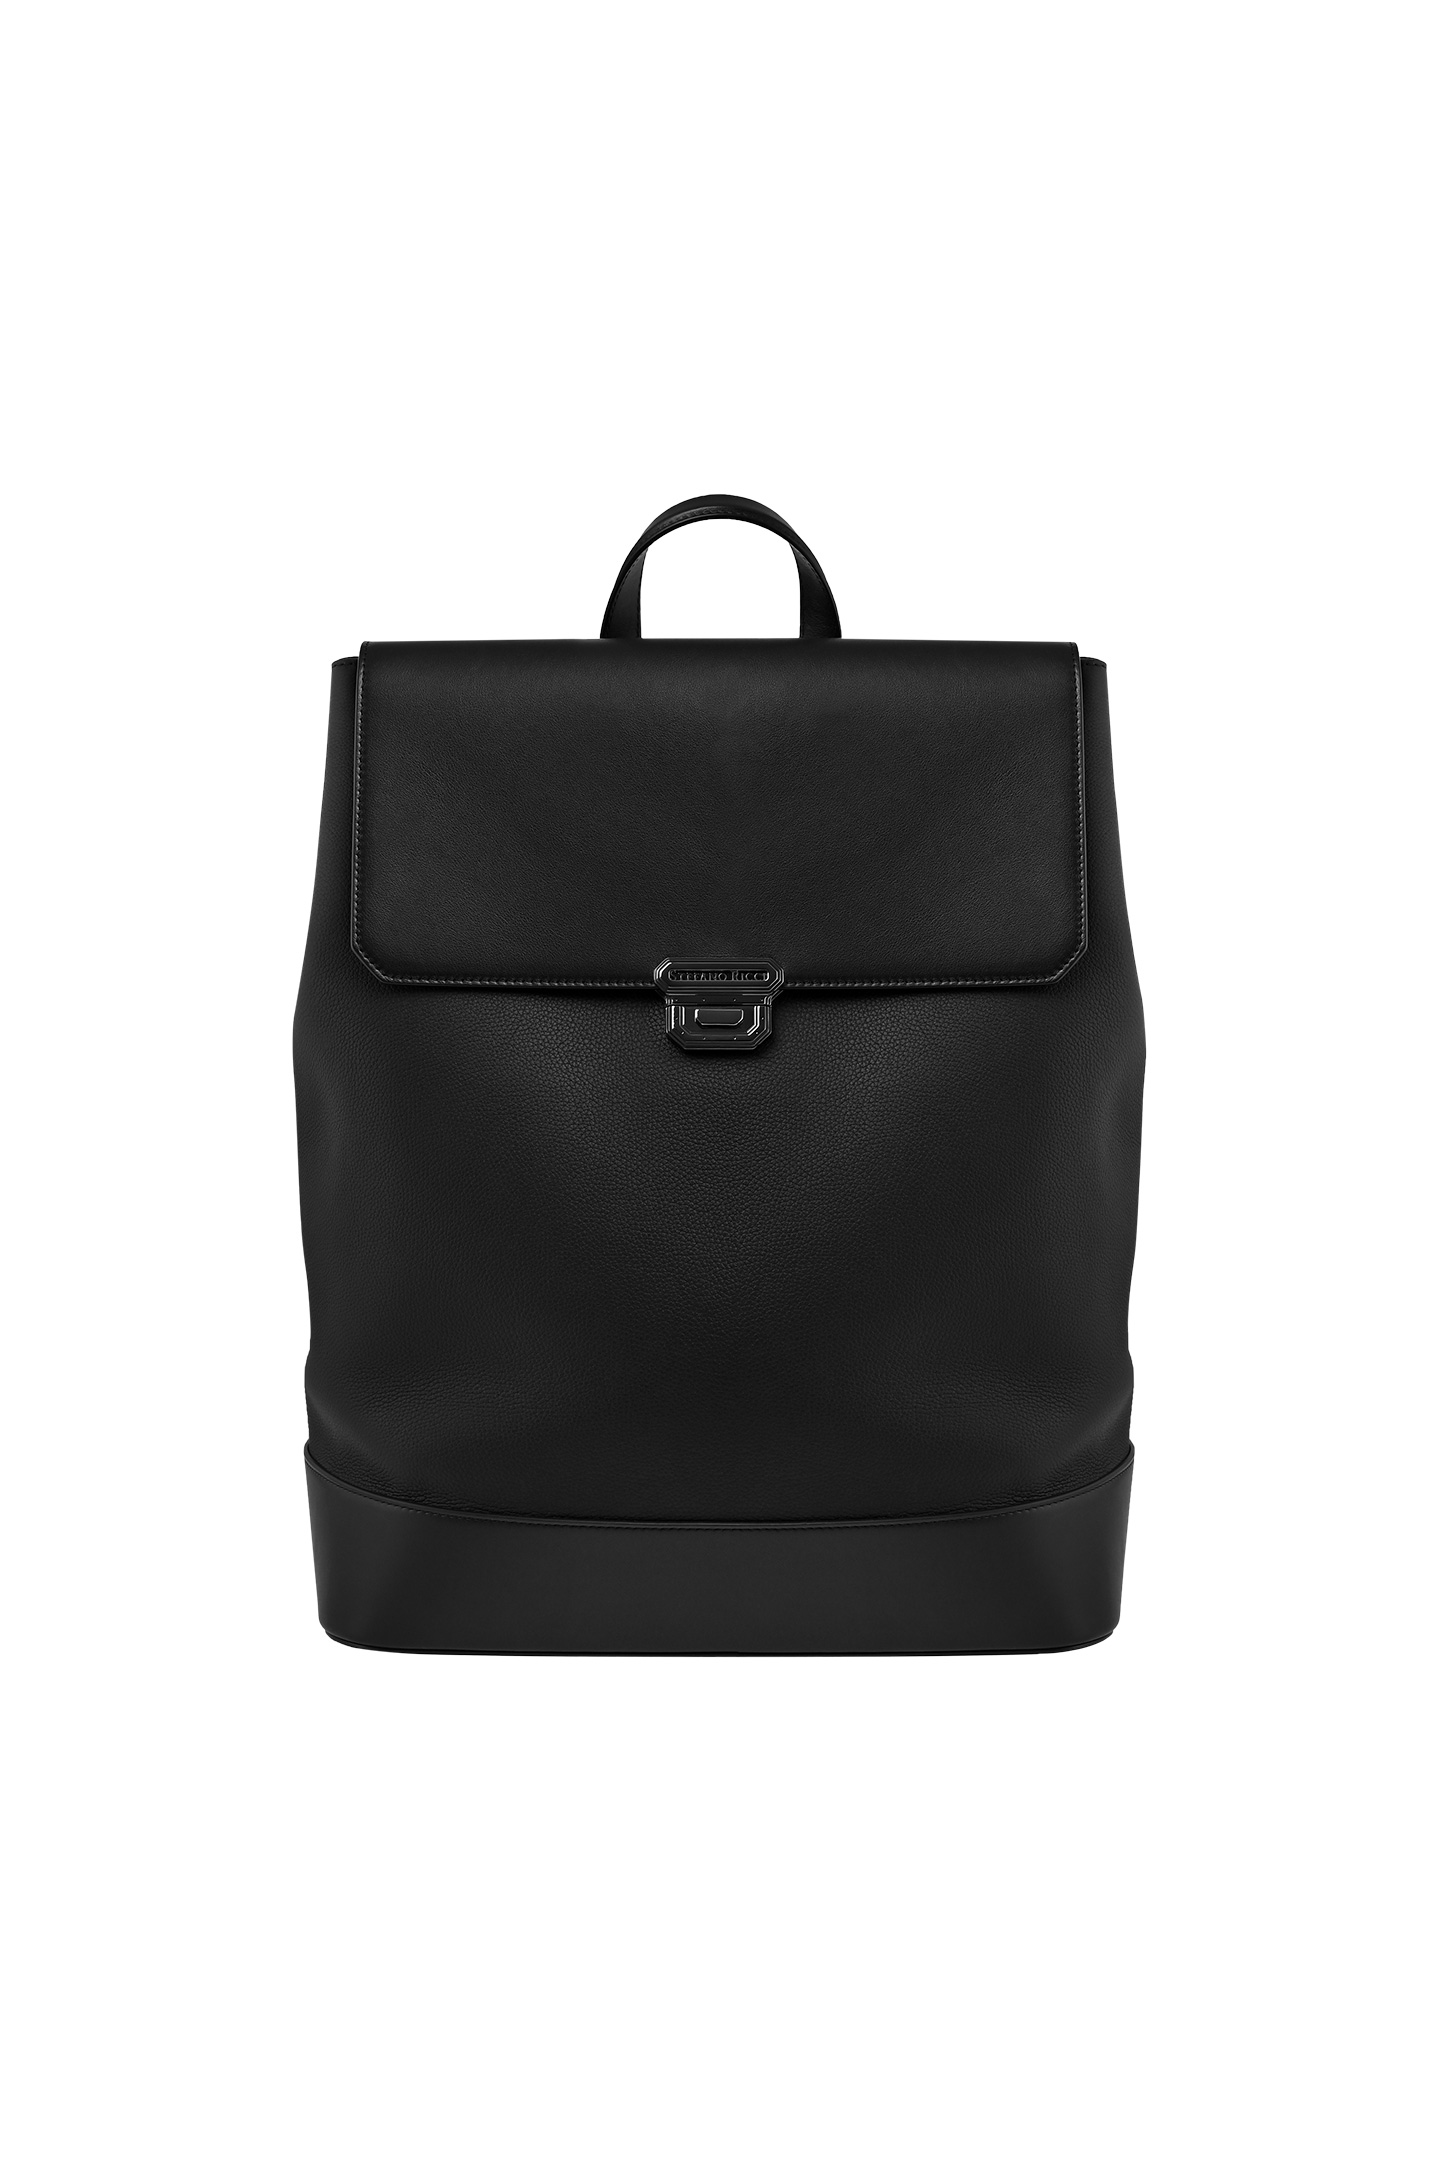 Рюкзак STEFANO RICCI ND228U MRVH, цвет: Черный, Мужской